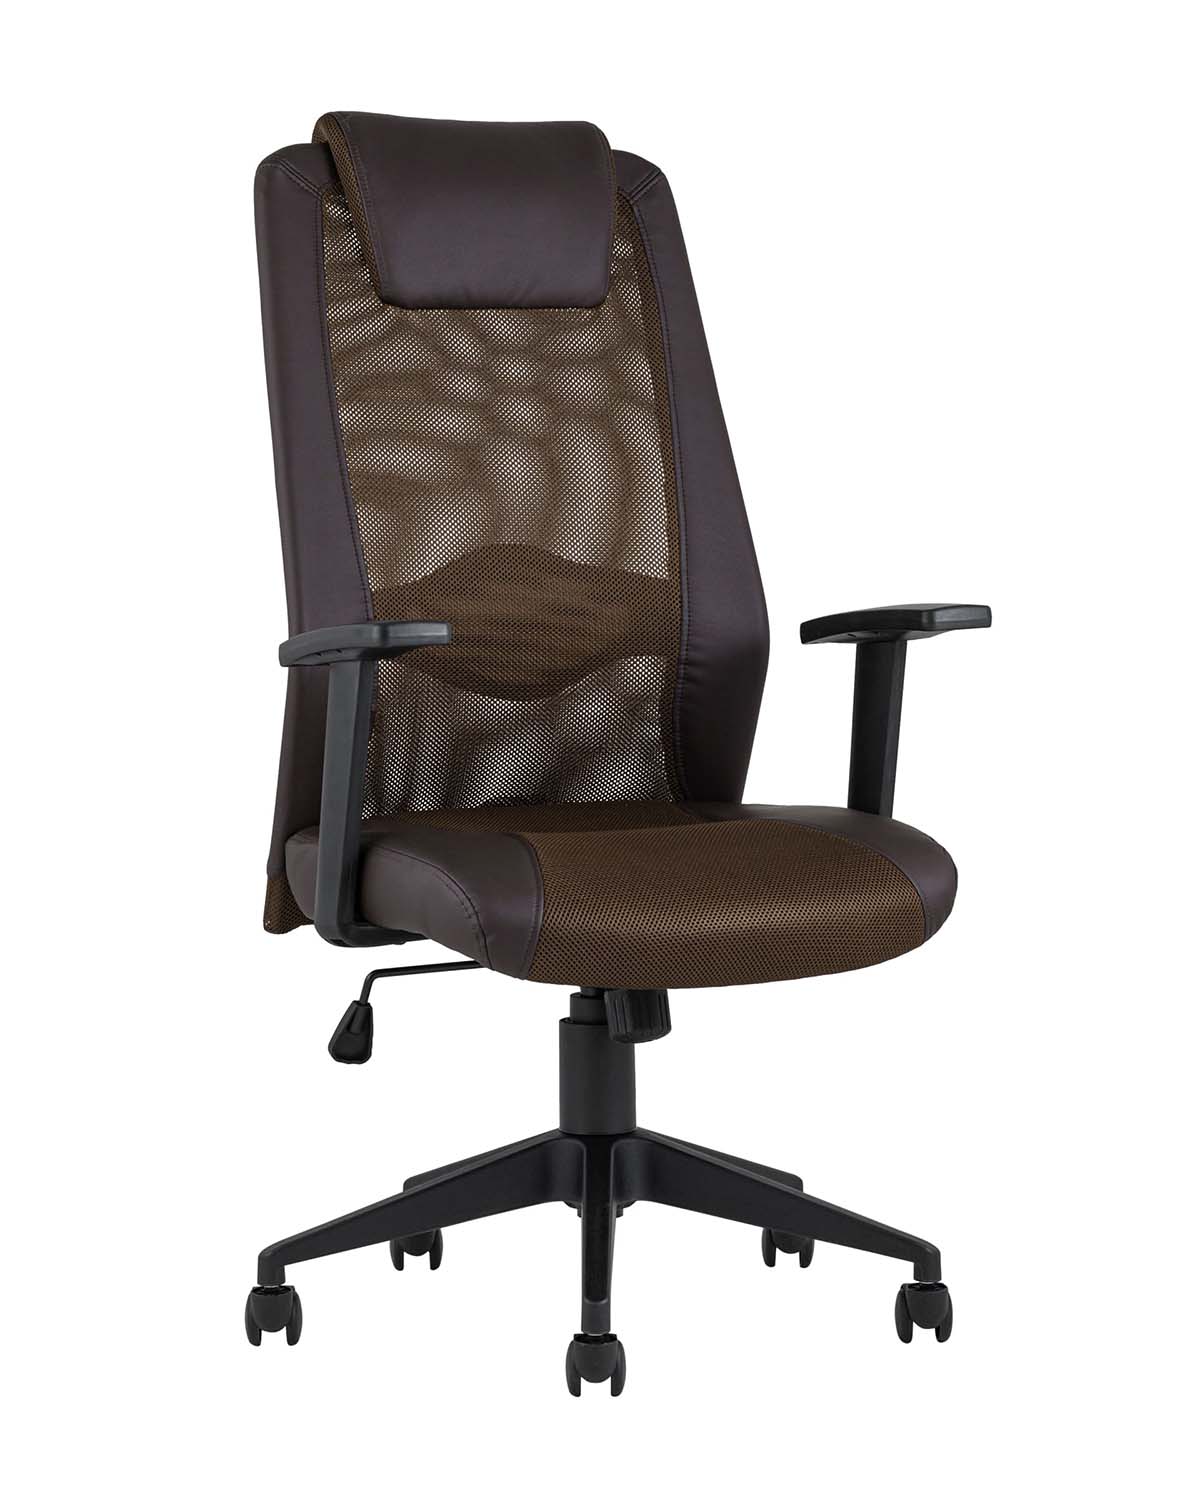 Компьютерное кресло TopChairs Studio офисное коричневое в обивке из экокожи и текстиля с сеткой, механизм качания To